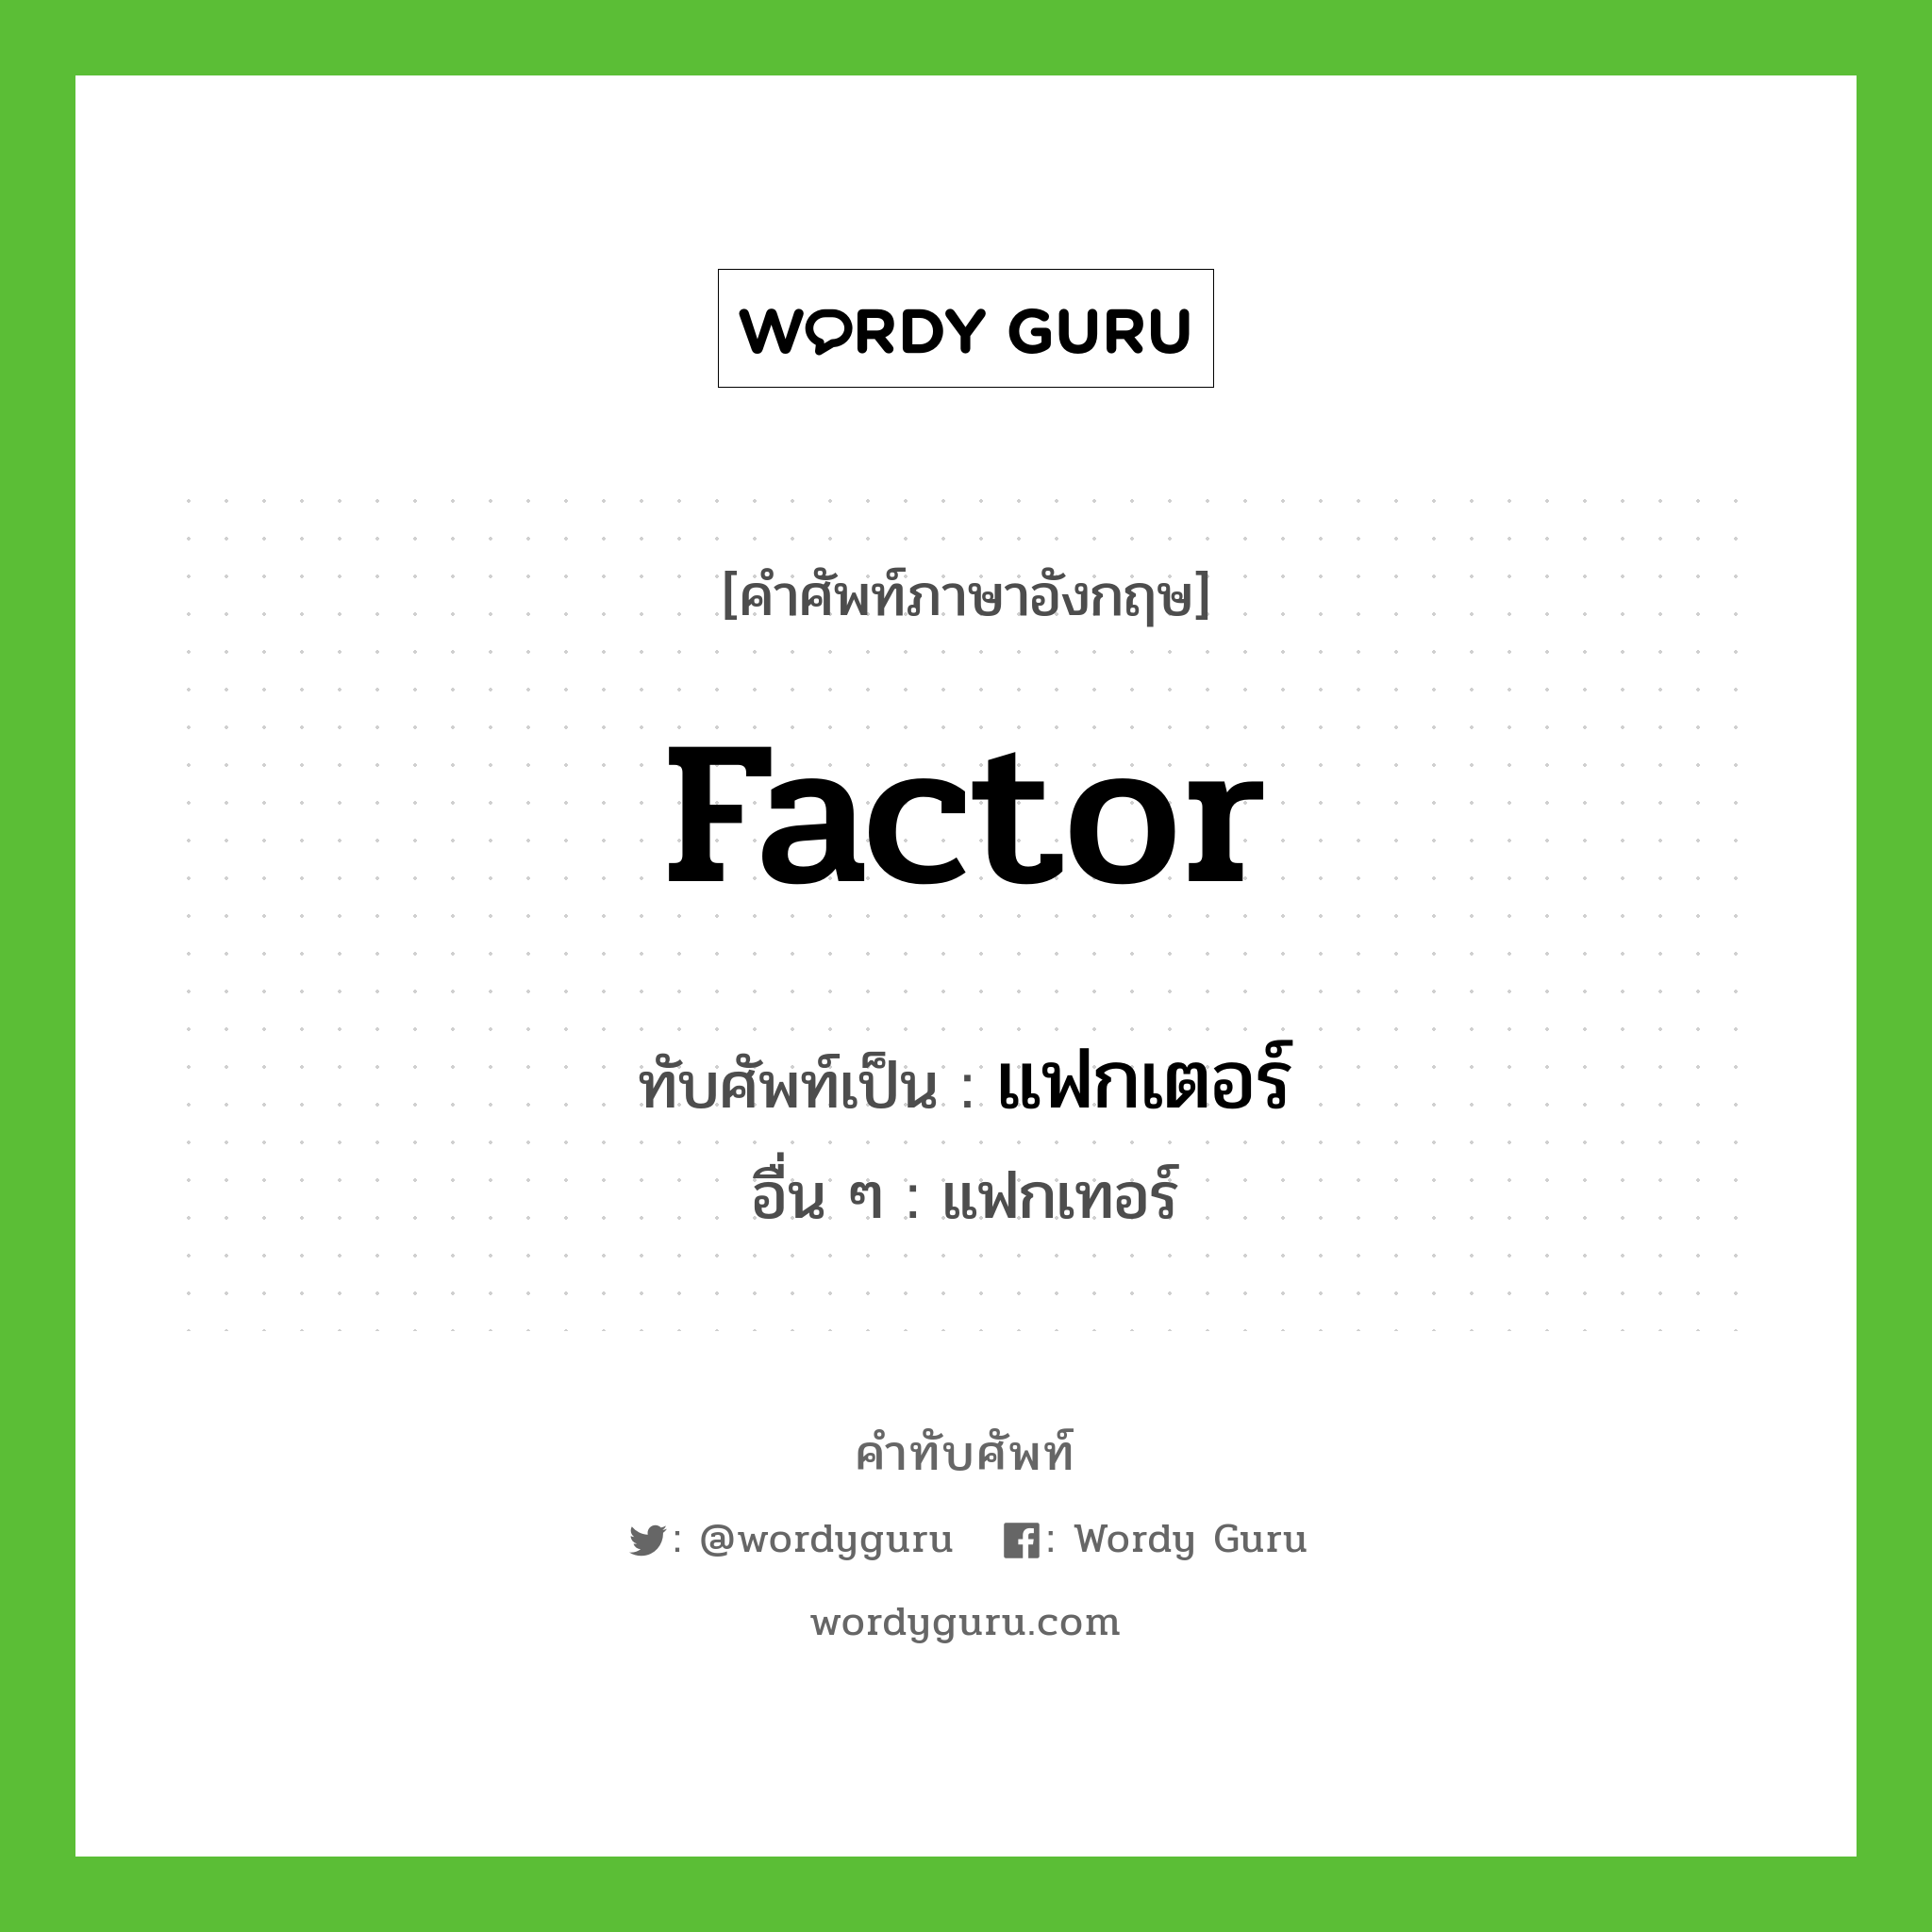 factor เขียนเป็นคำไทยว่าอะไร?, คำศัพท์ภาษาอังกฤษ factor ทับศัพท์เป็น แฟกเตอร์ อื่น ๆ แฟกเทอร์